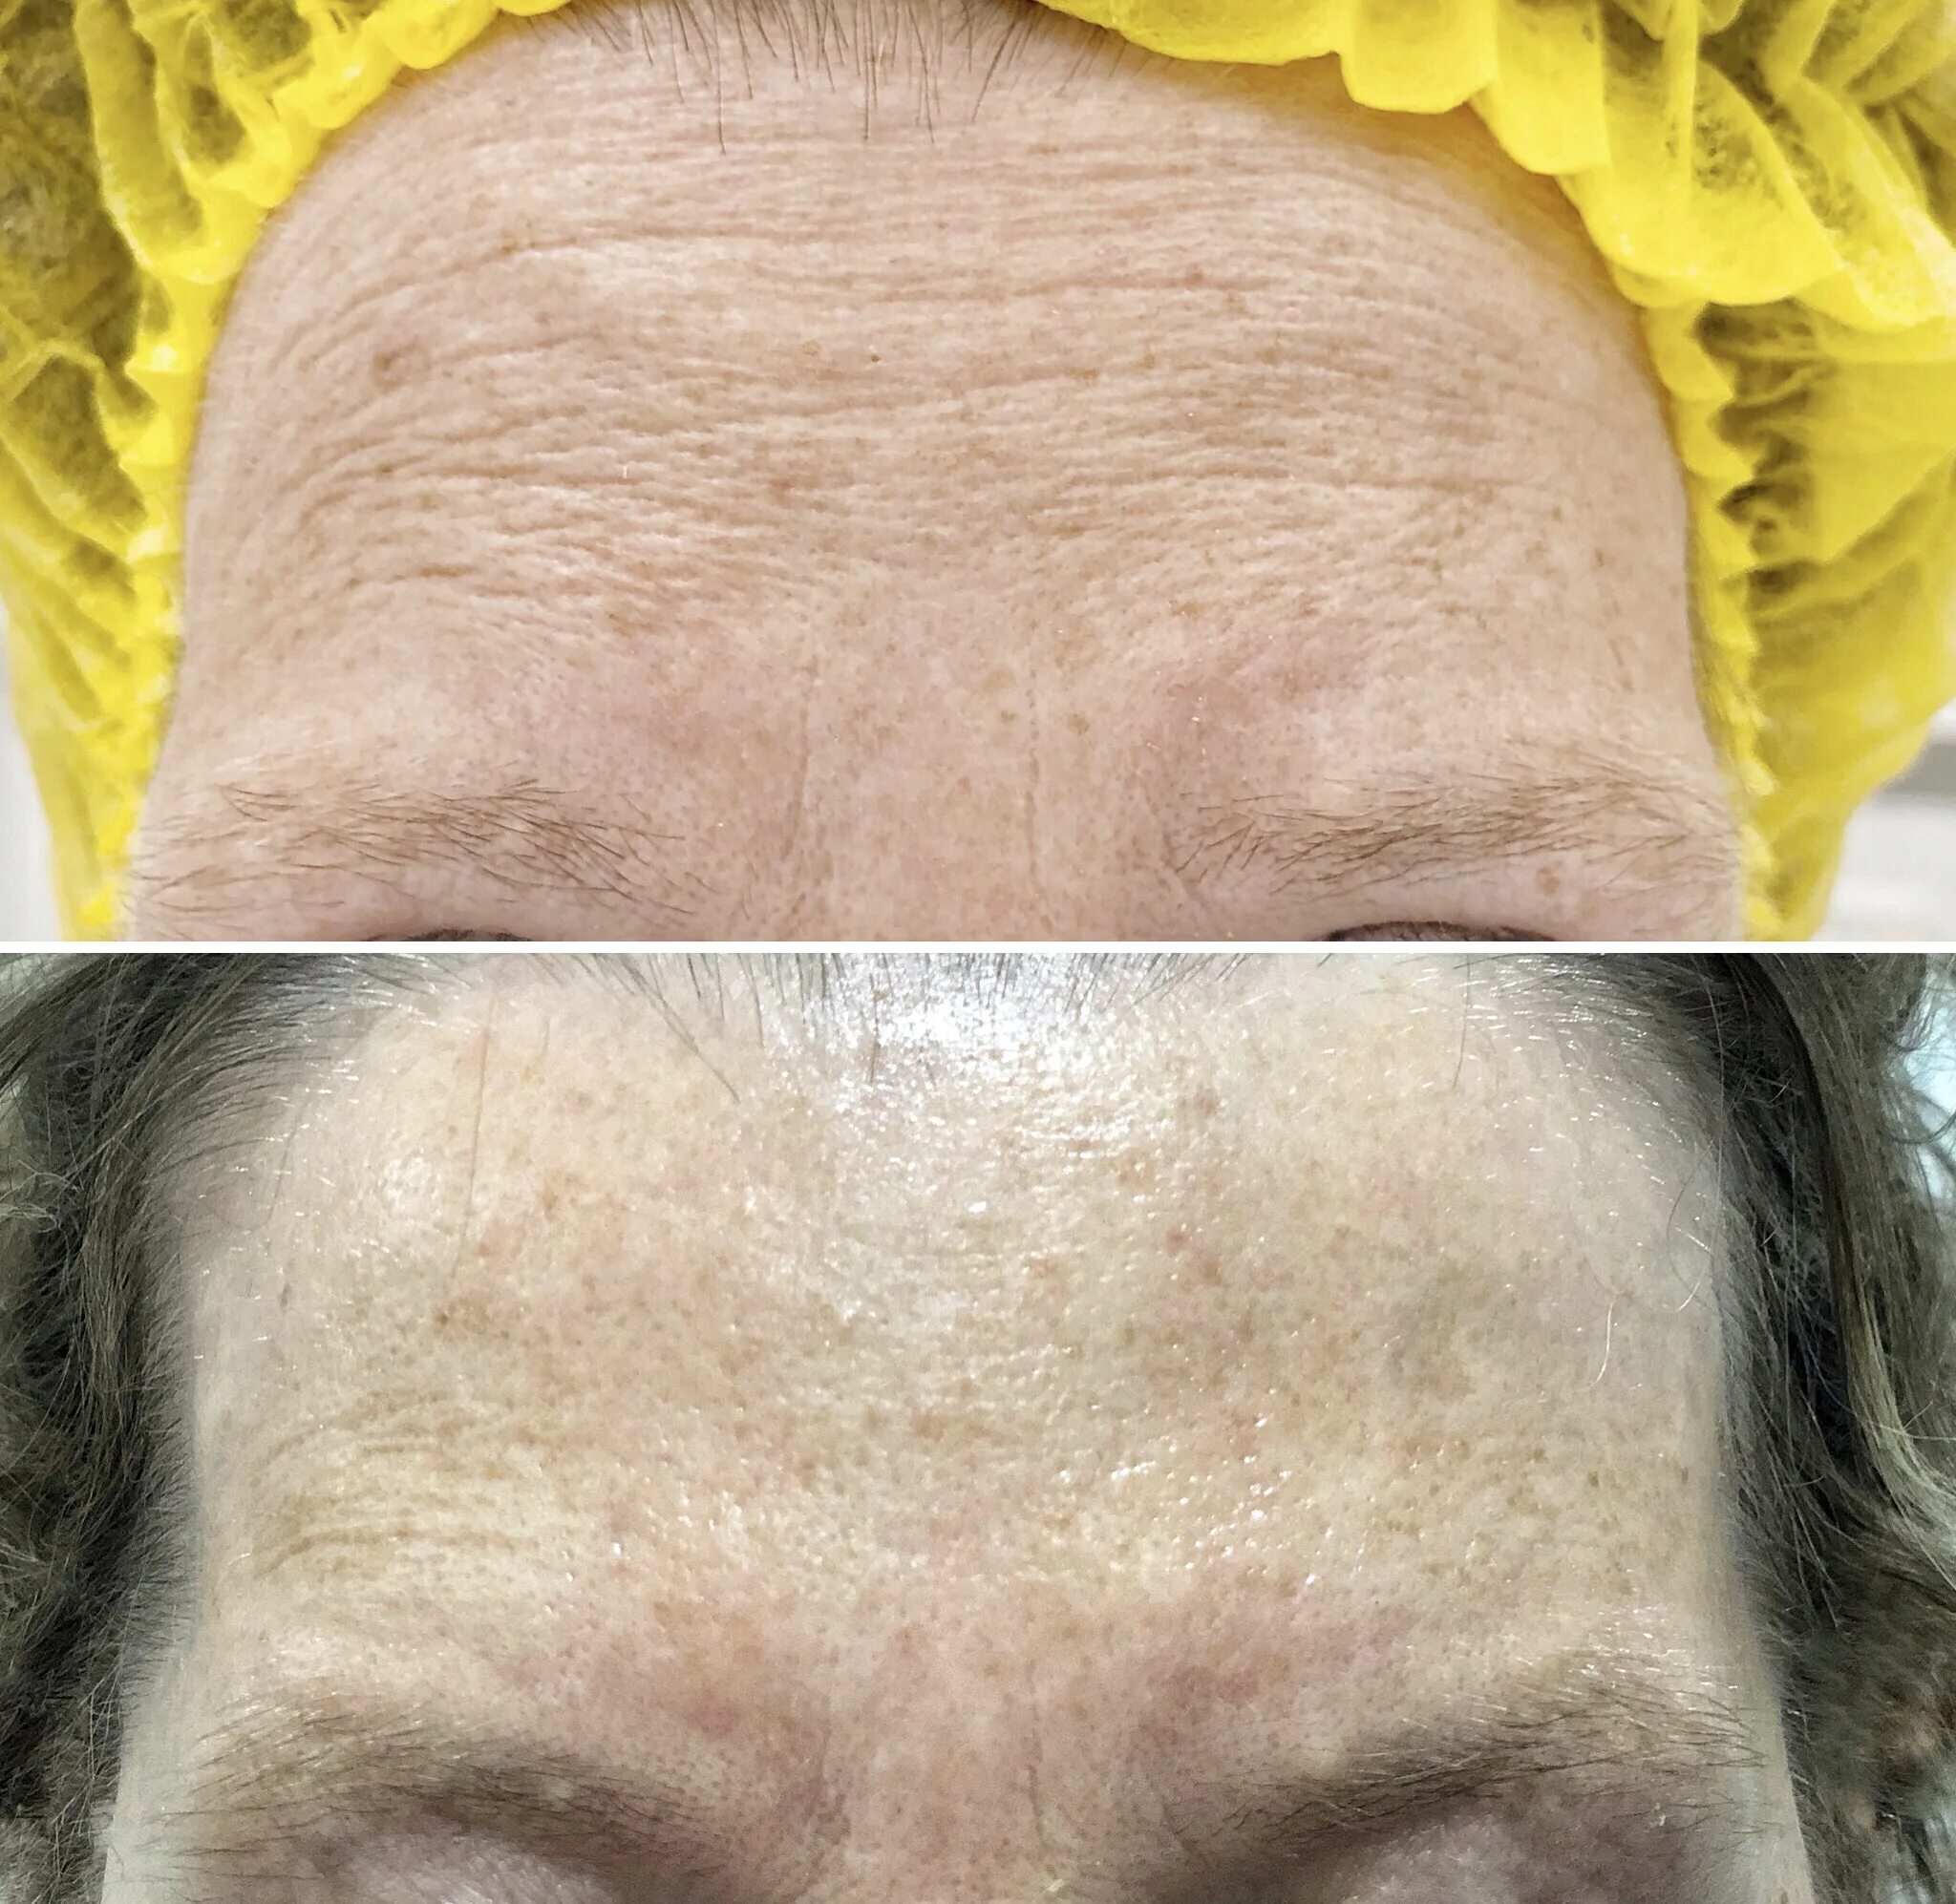 Ботулинотерапия лица отзывы. Ботулинотерапия в косметологии лоб до и после. Ботулинотерапия глаз до и после. Кожа после ботулинотерапии. Бутолинотерапия фото до и после.